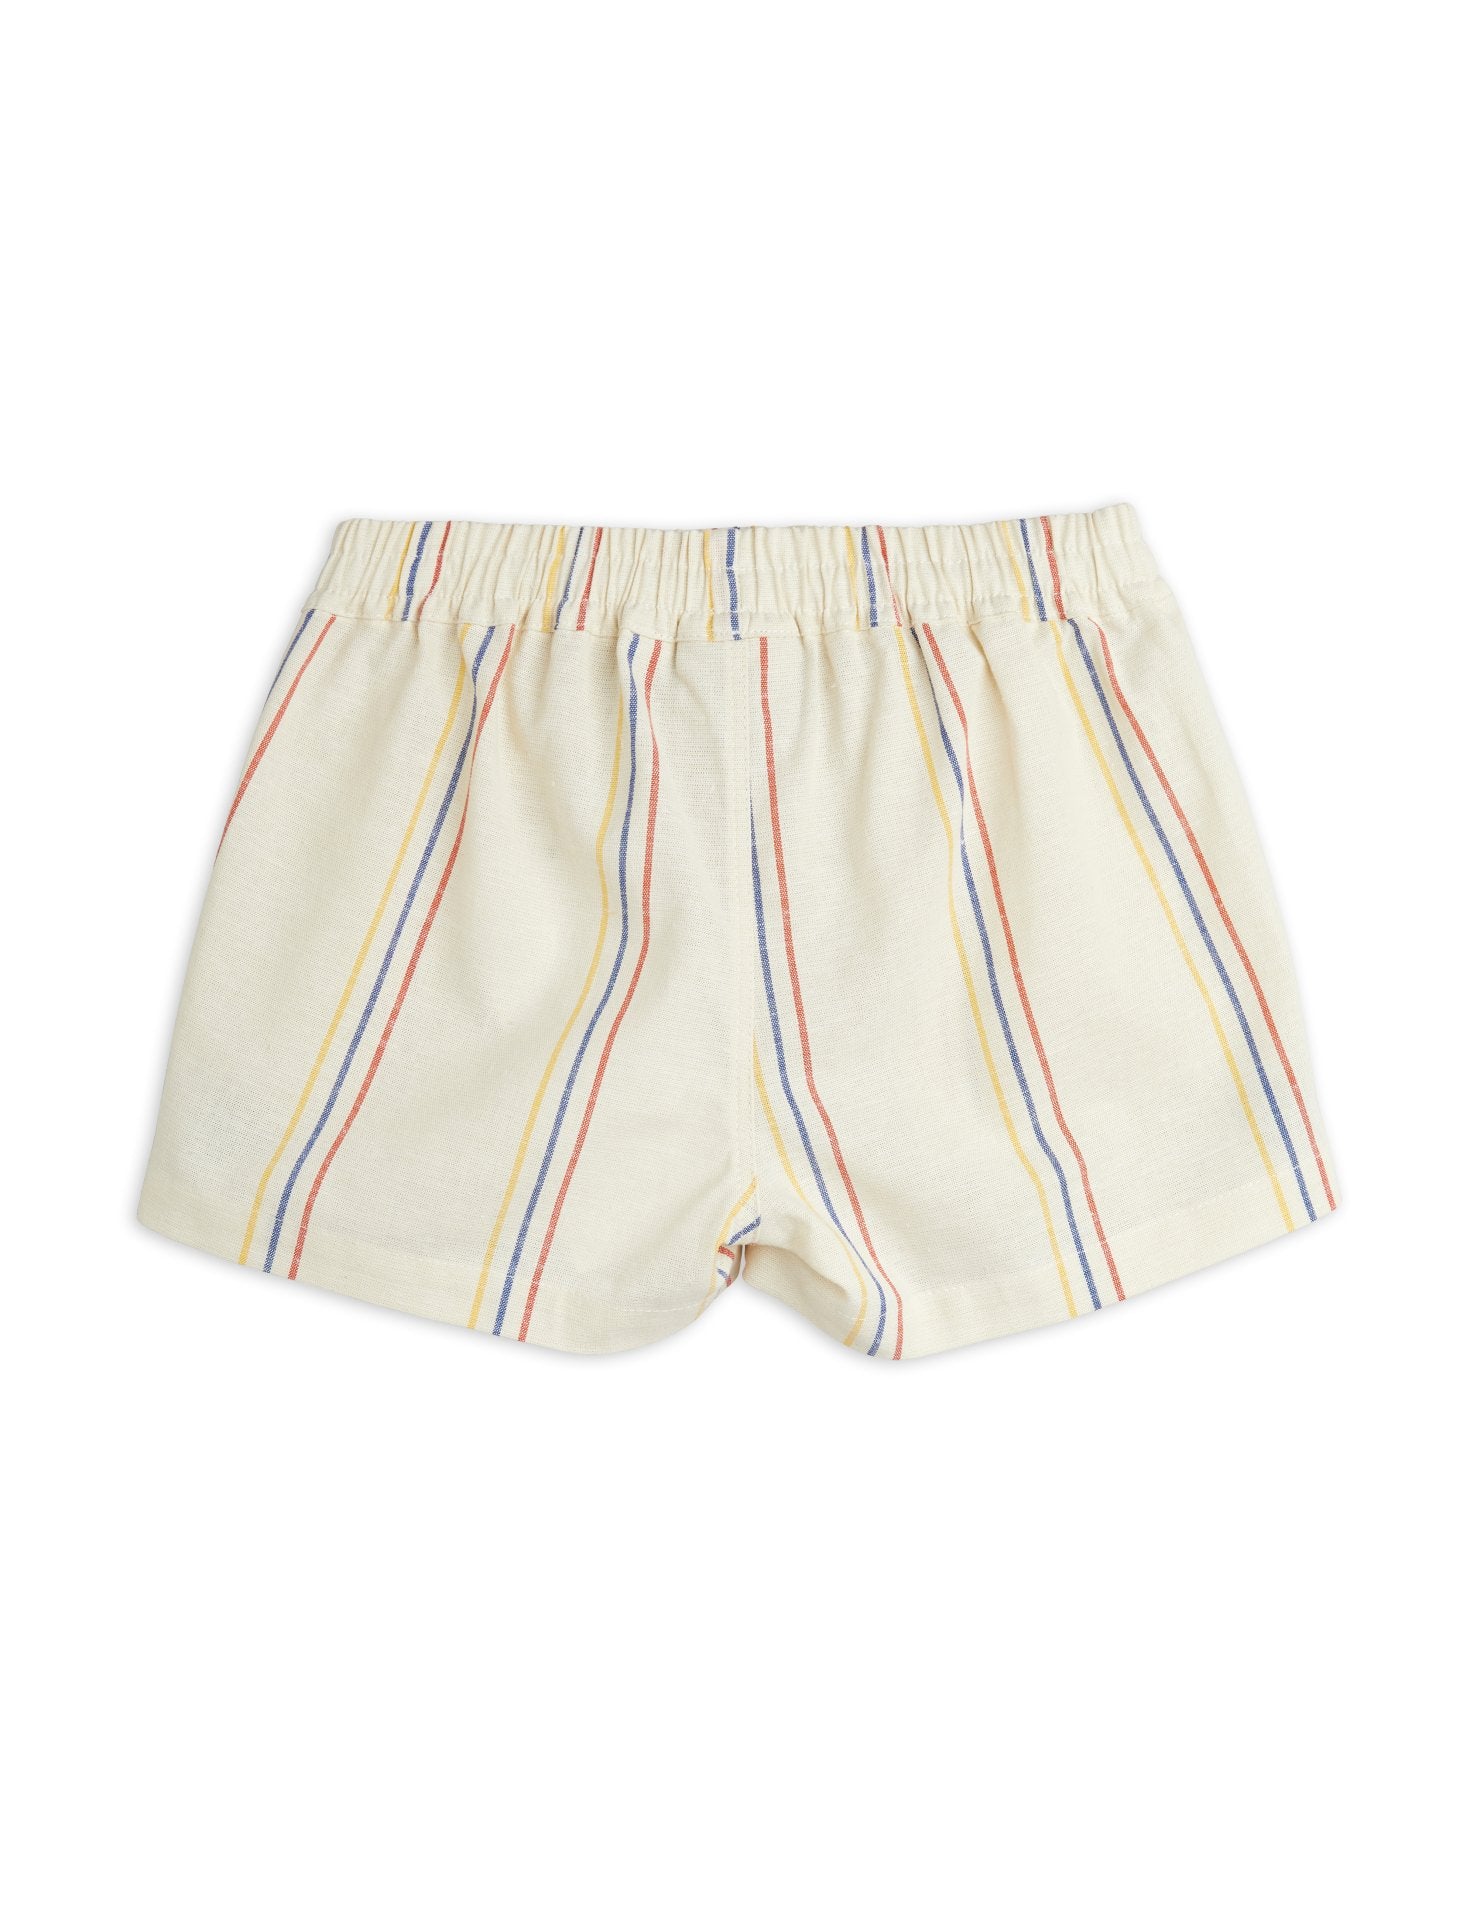 MINI RODINI / Stripe woven shorts